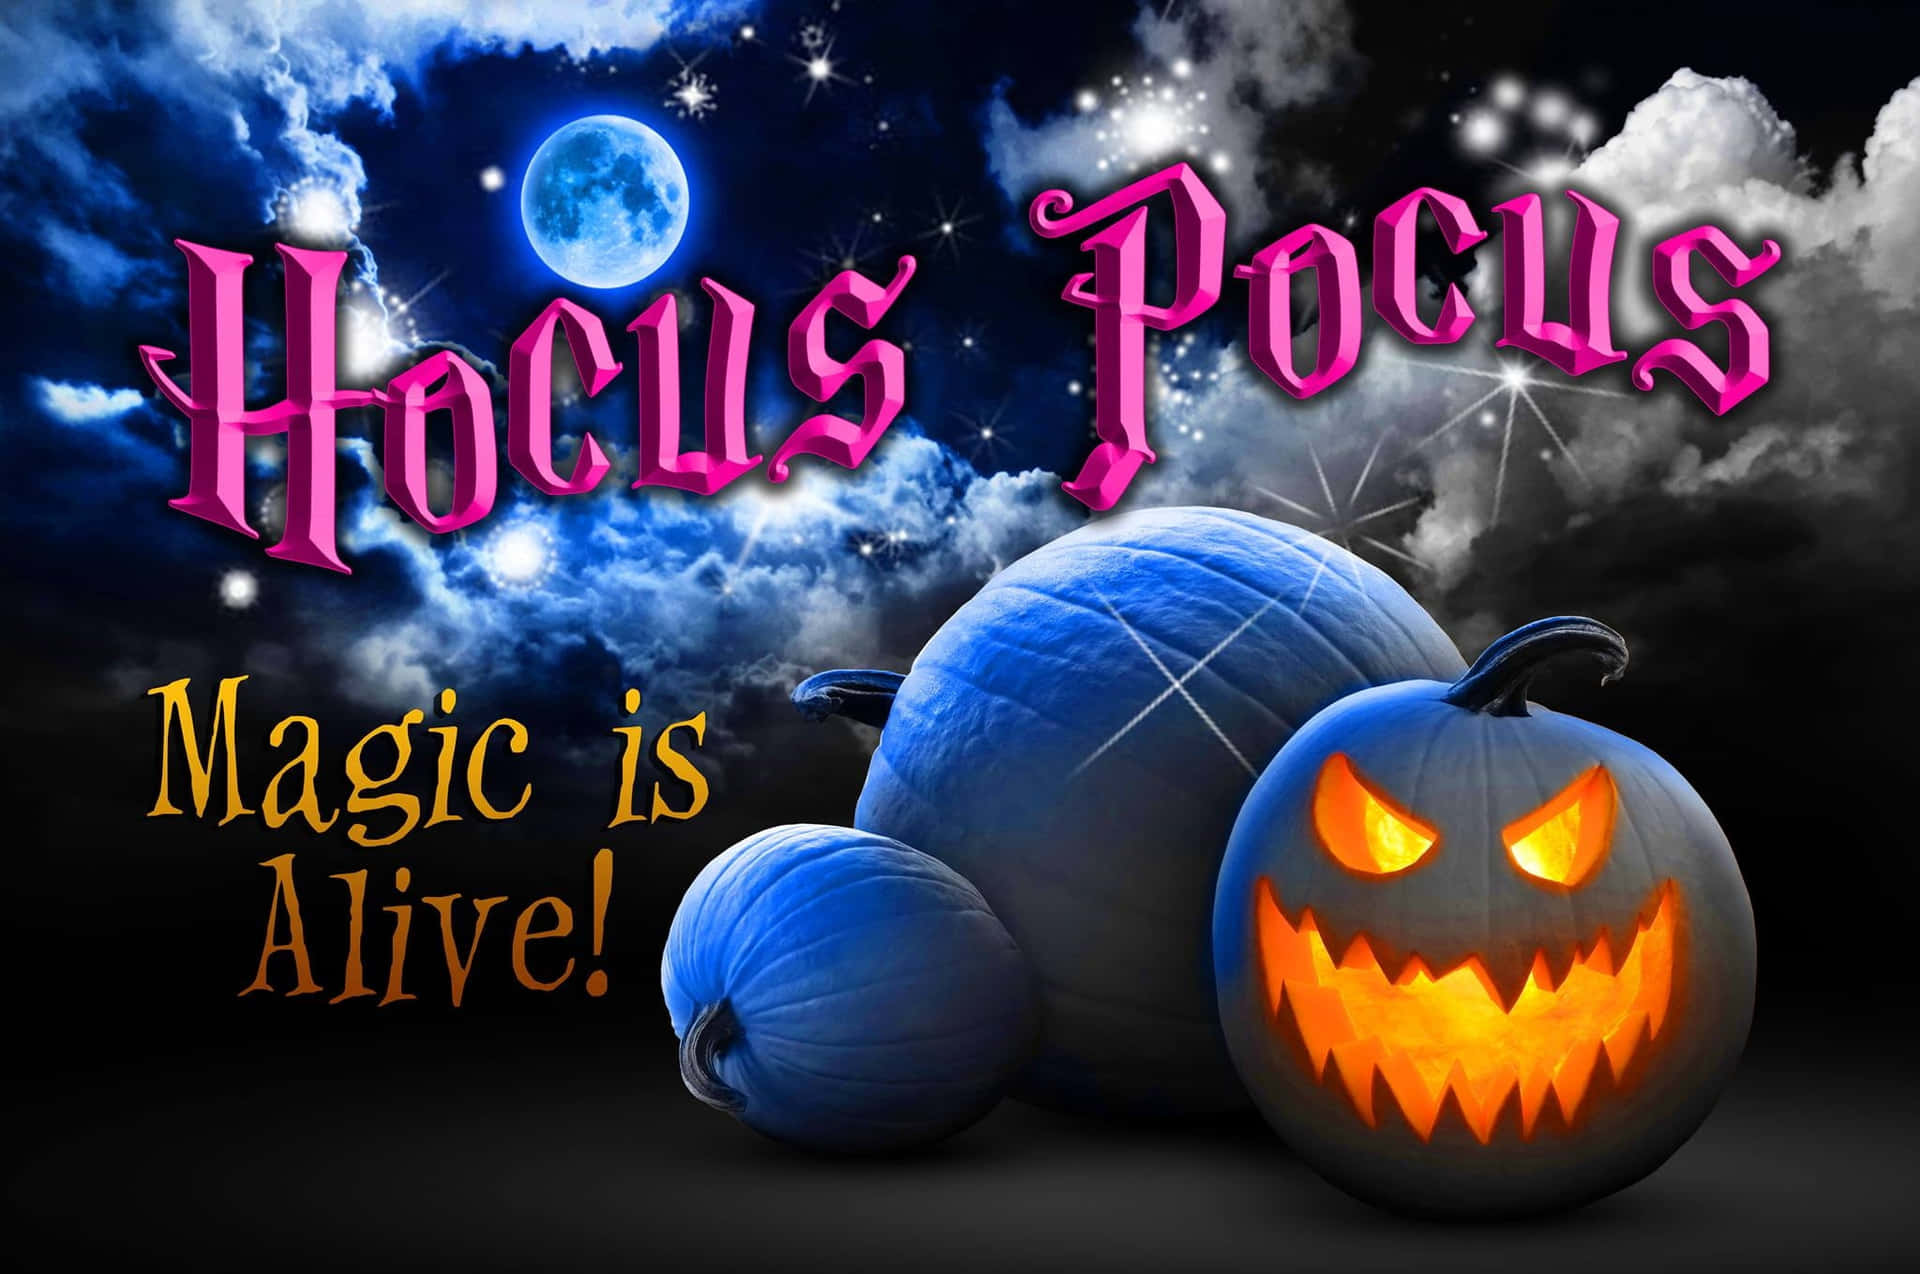 Erlebedie Zauberhaften Abenteuer Von Halloween Mit Hocus Pocus.